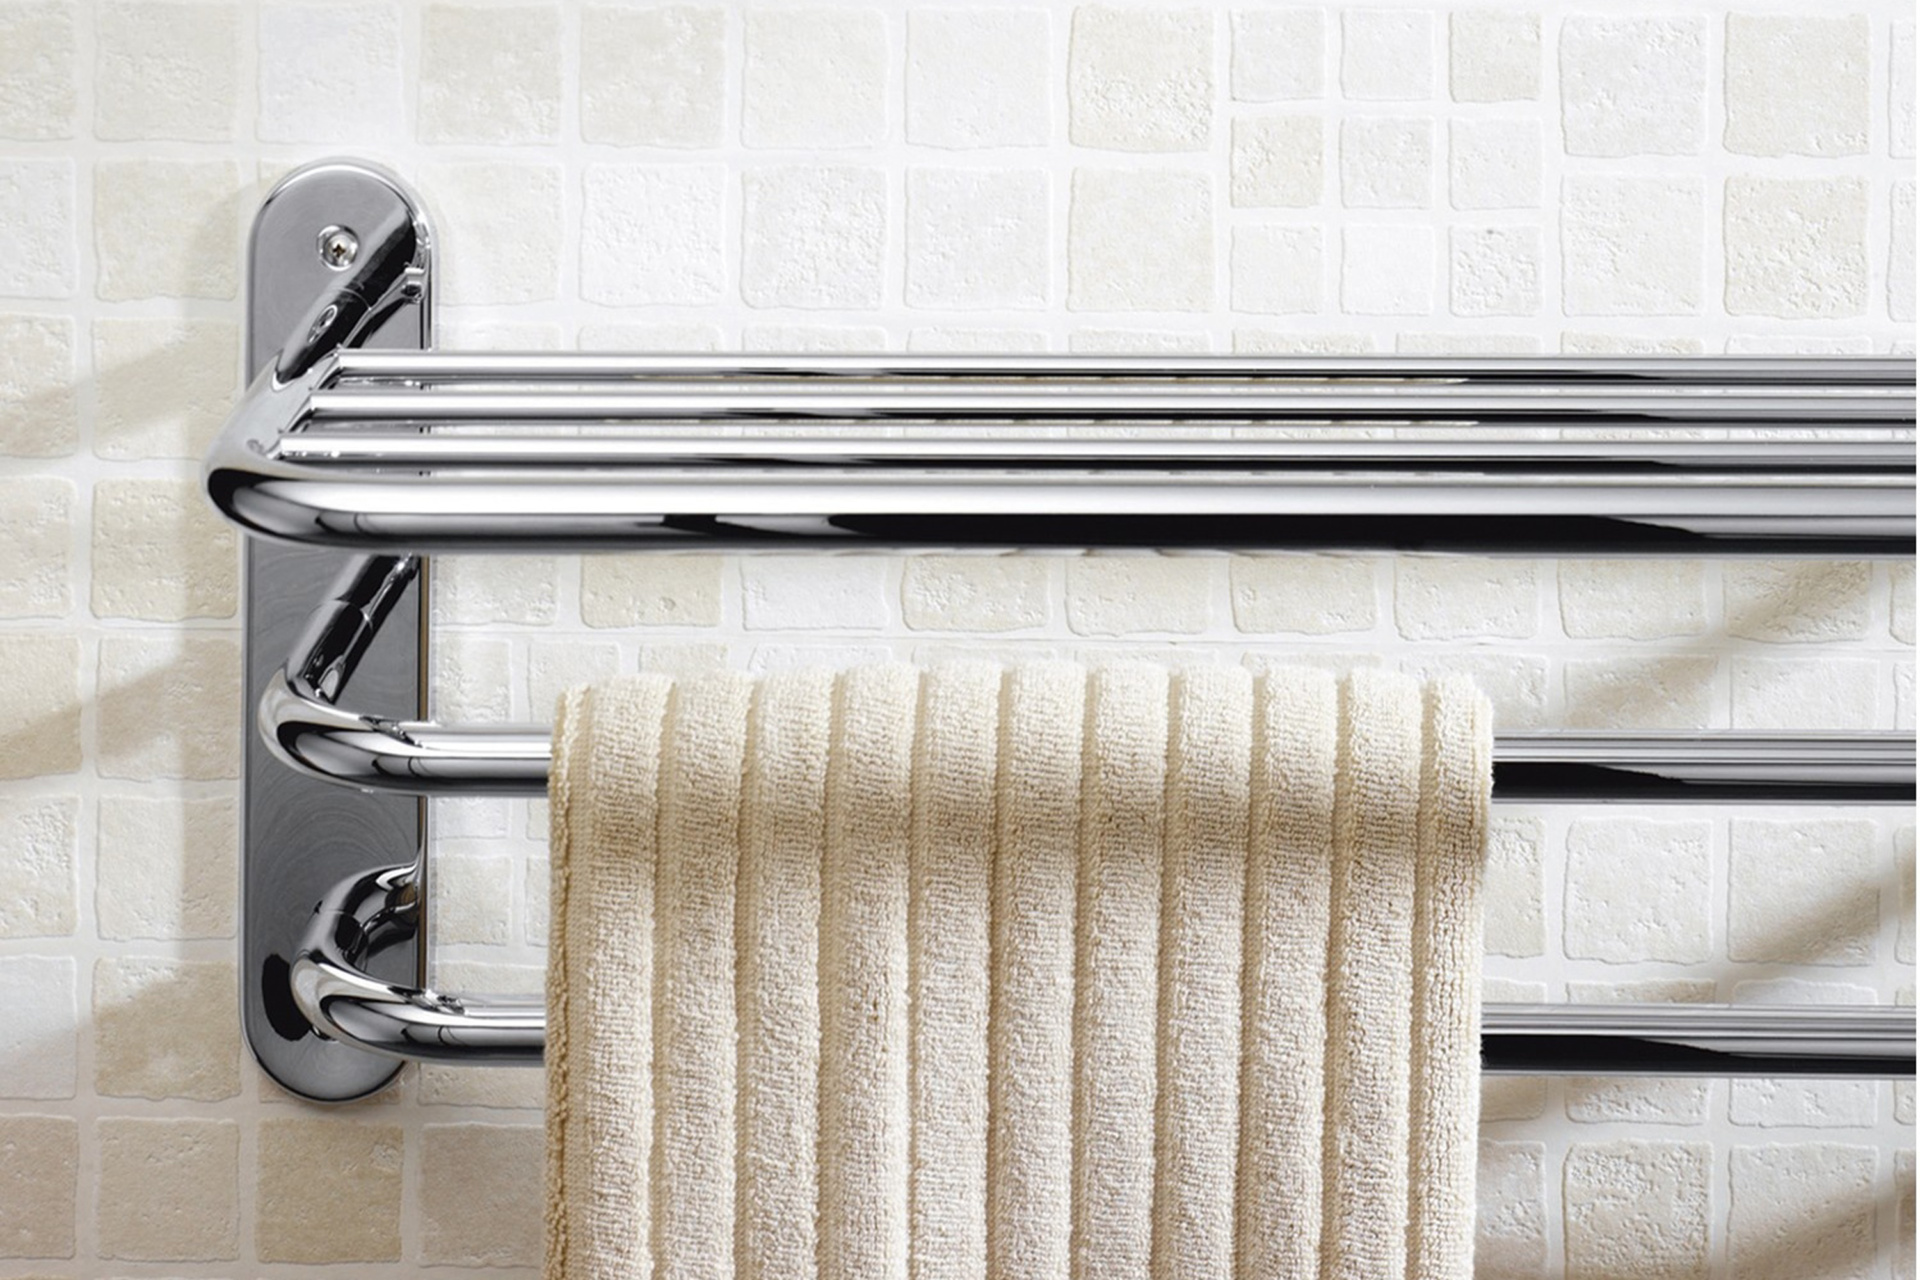 Высуши полотенце. YLT 0313а сушилка Towel Rack. Сушилка для белья Stainless Steel Towel Rack. Полотенце сушилка для ванны. Держатель для полотенец в ванну.